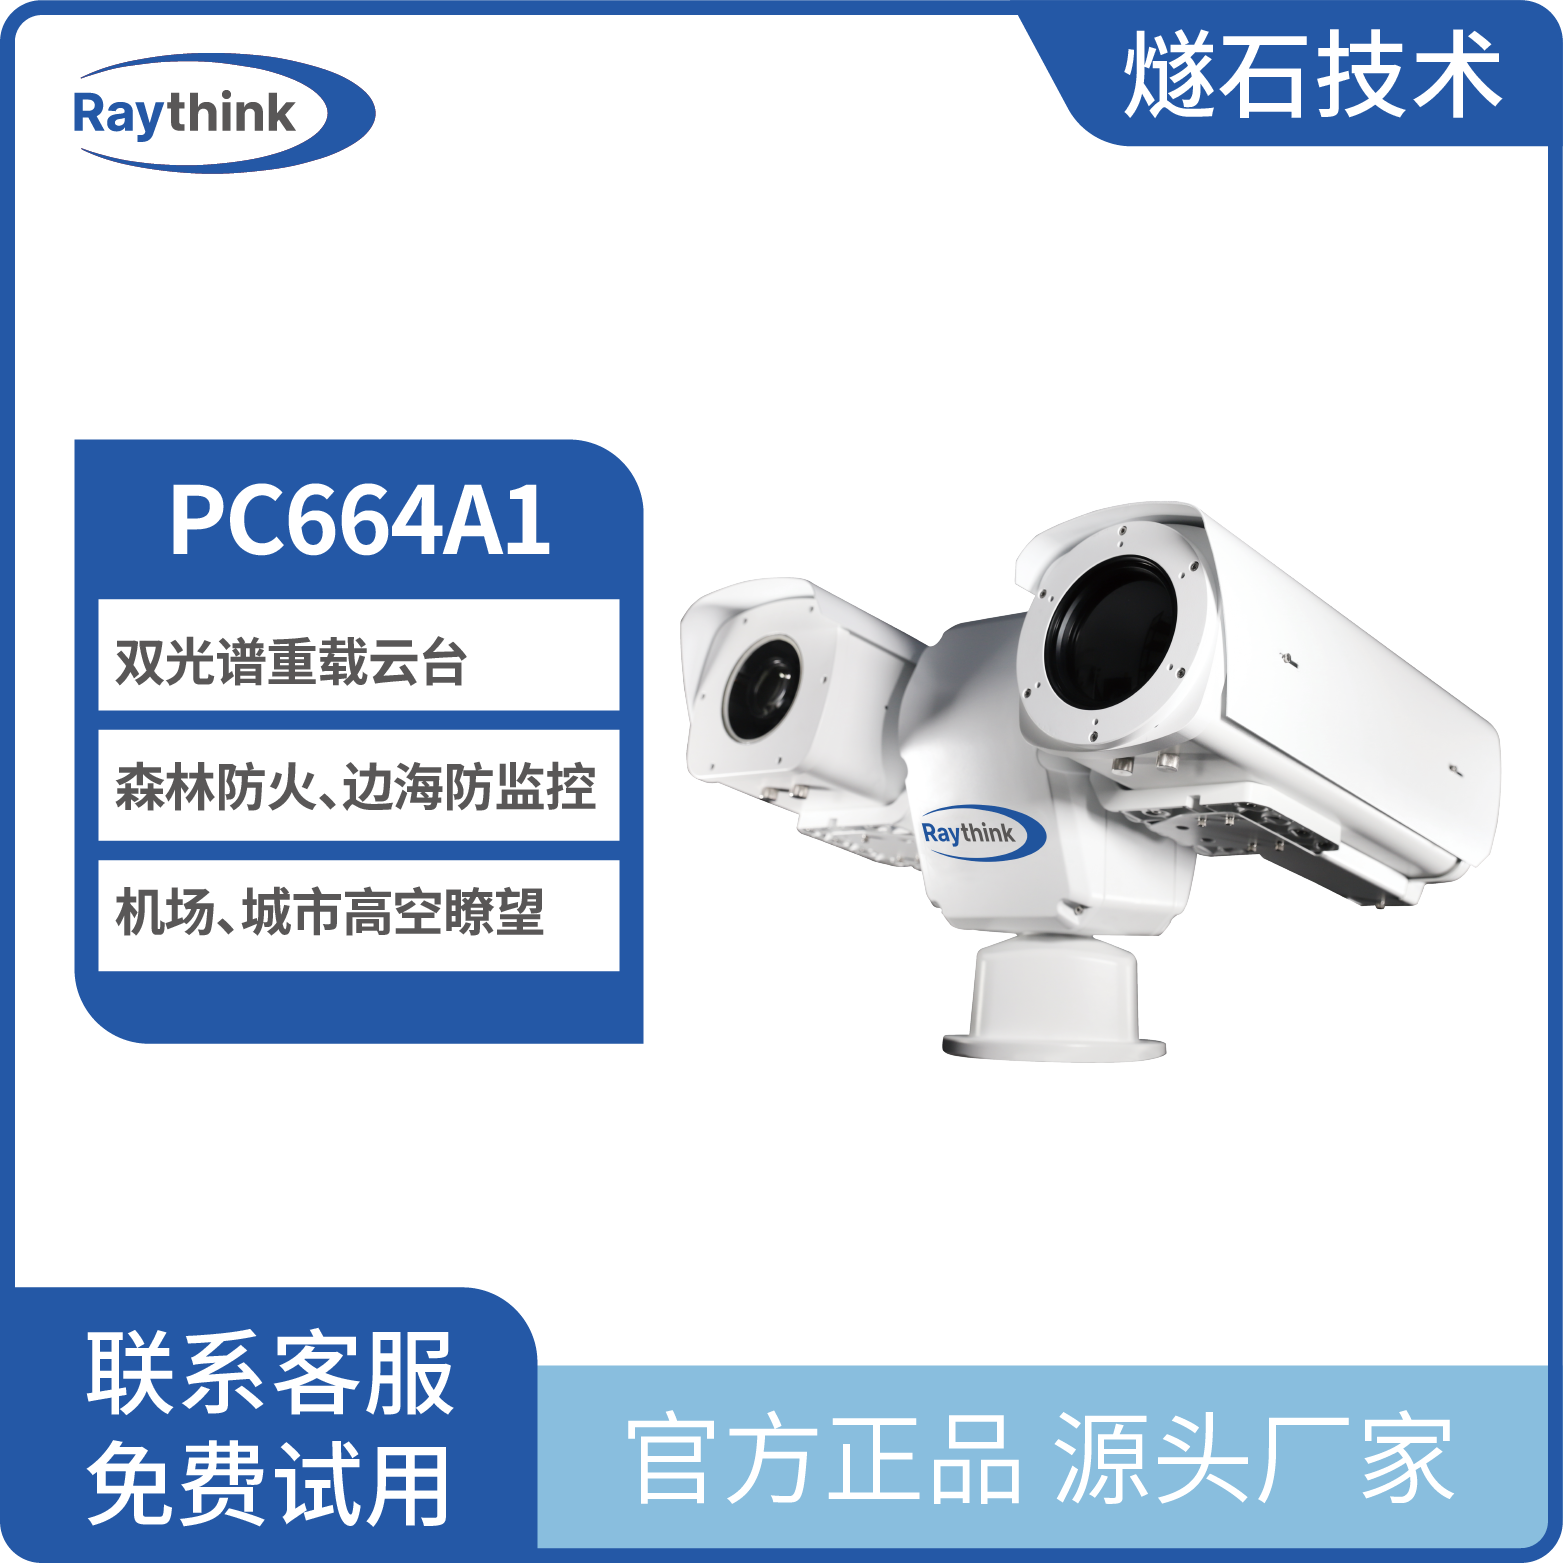 多光谱重型云台摄像机PC664A1 